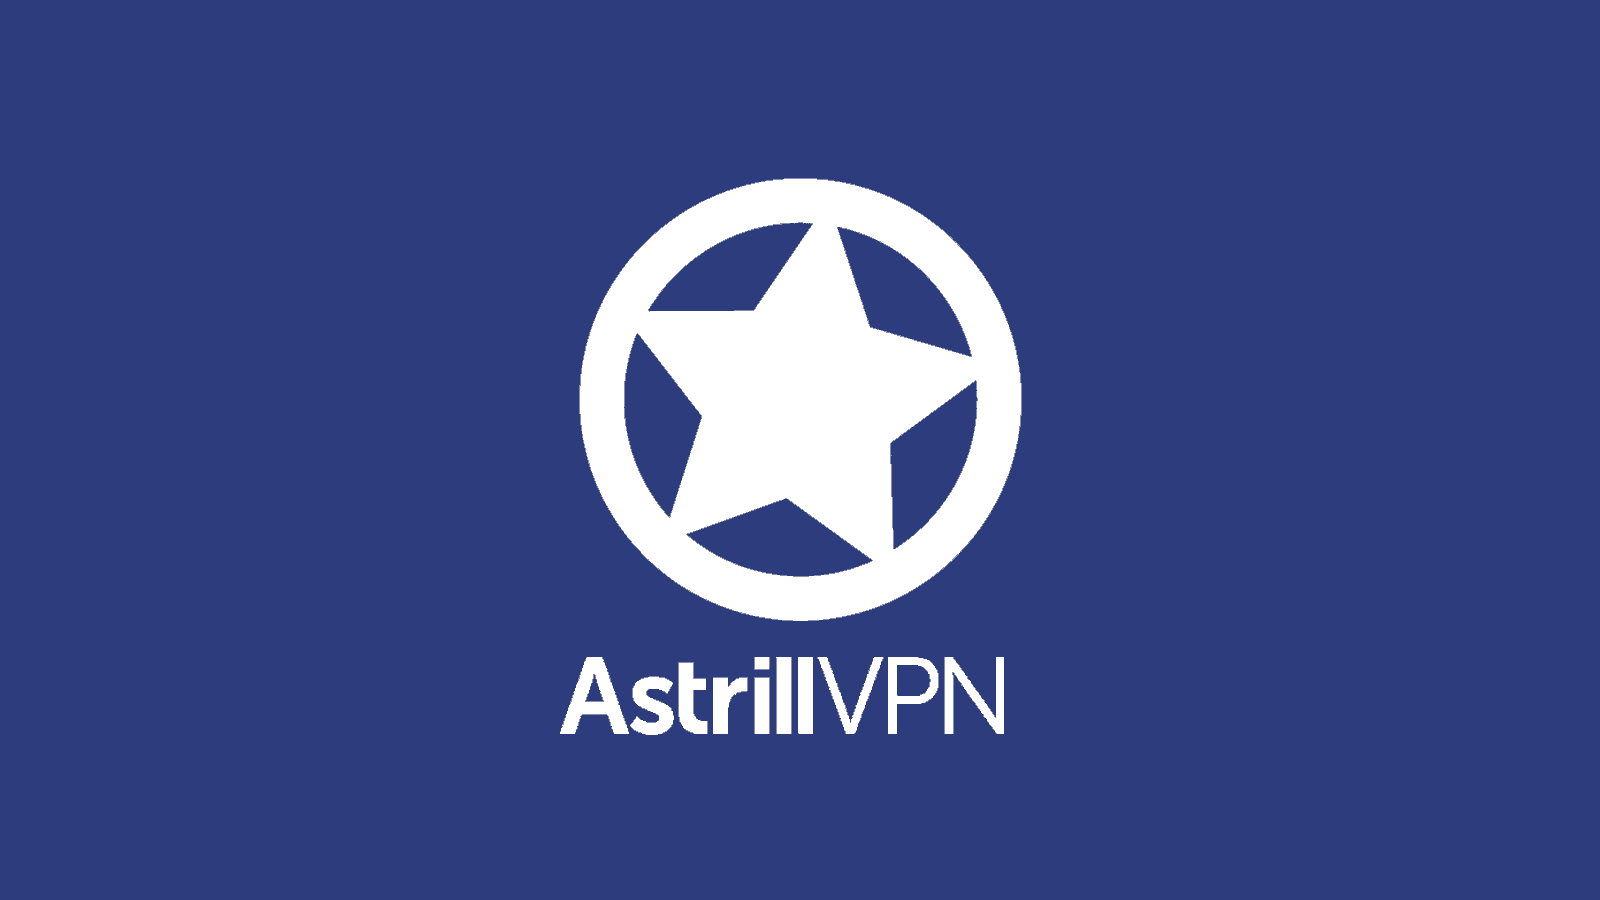 Astrill VPN Logo - Product Logo